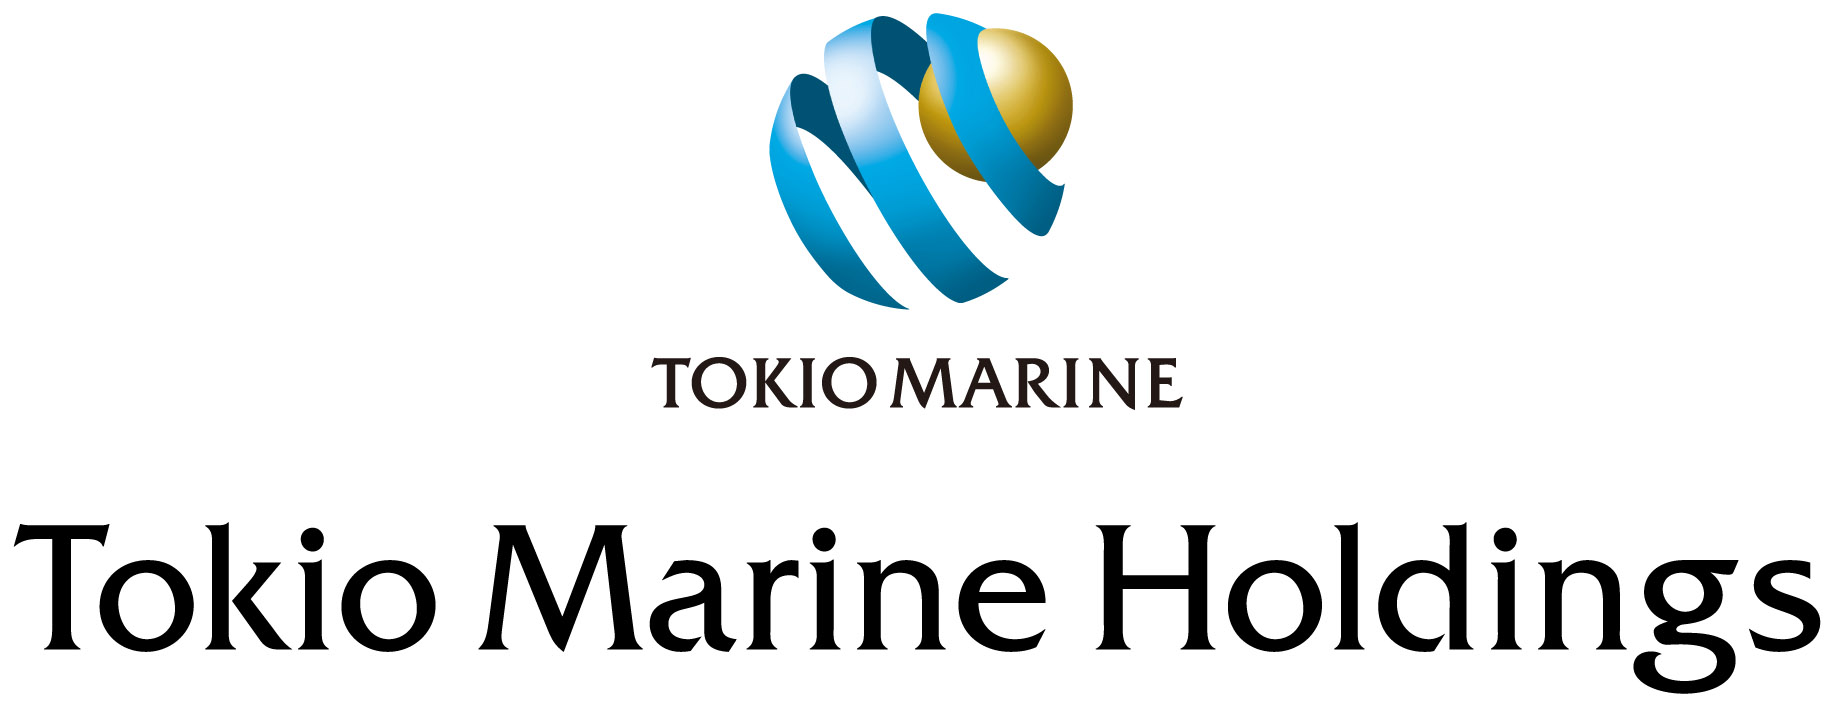 Tokio marine jb